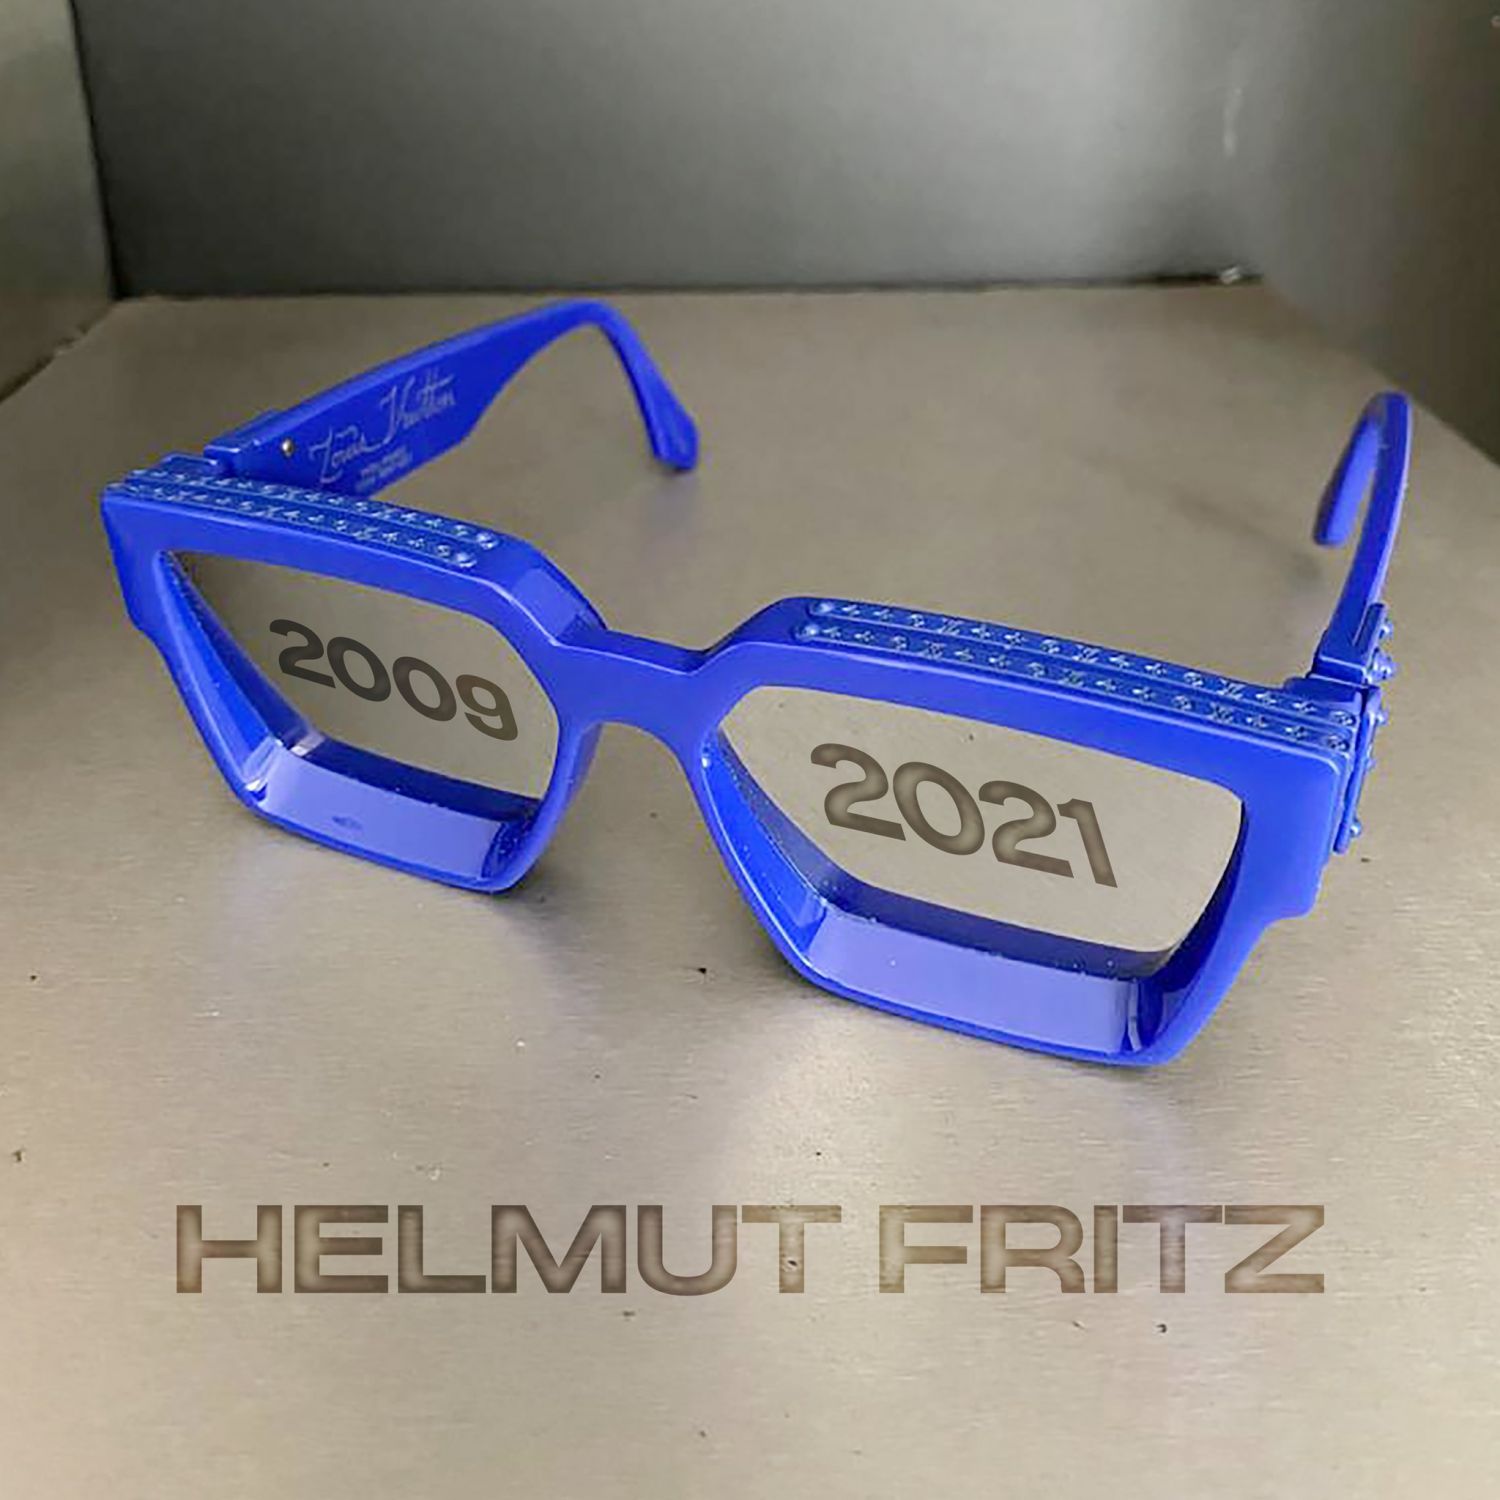 Helmut Fritz raccroche les lunettes